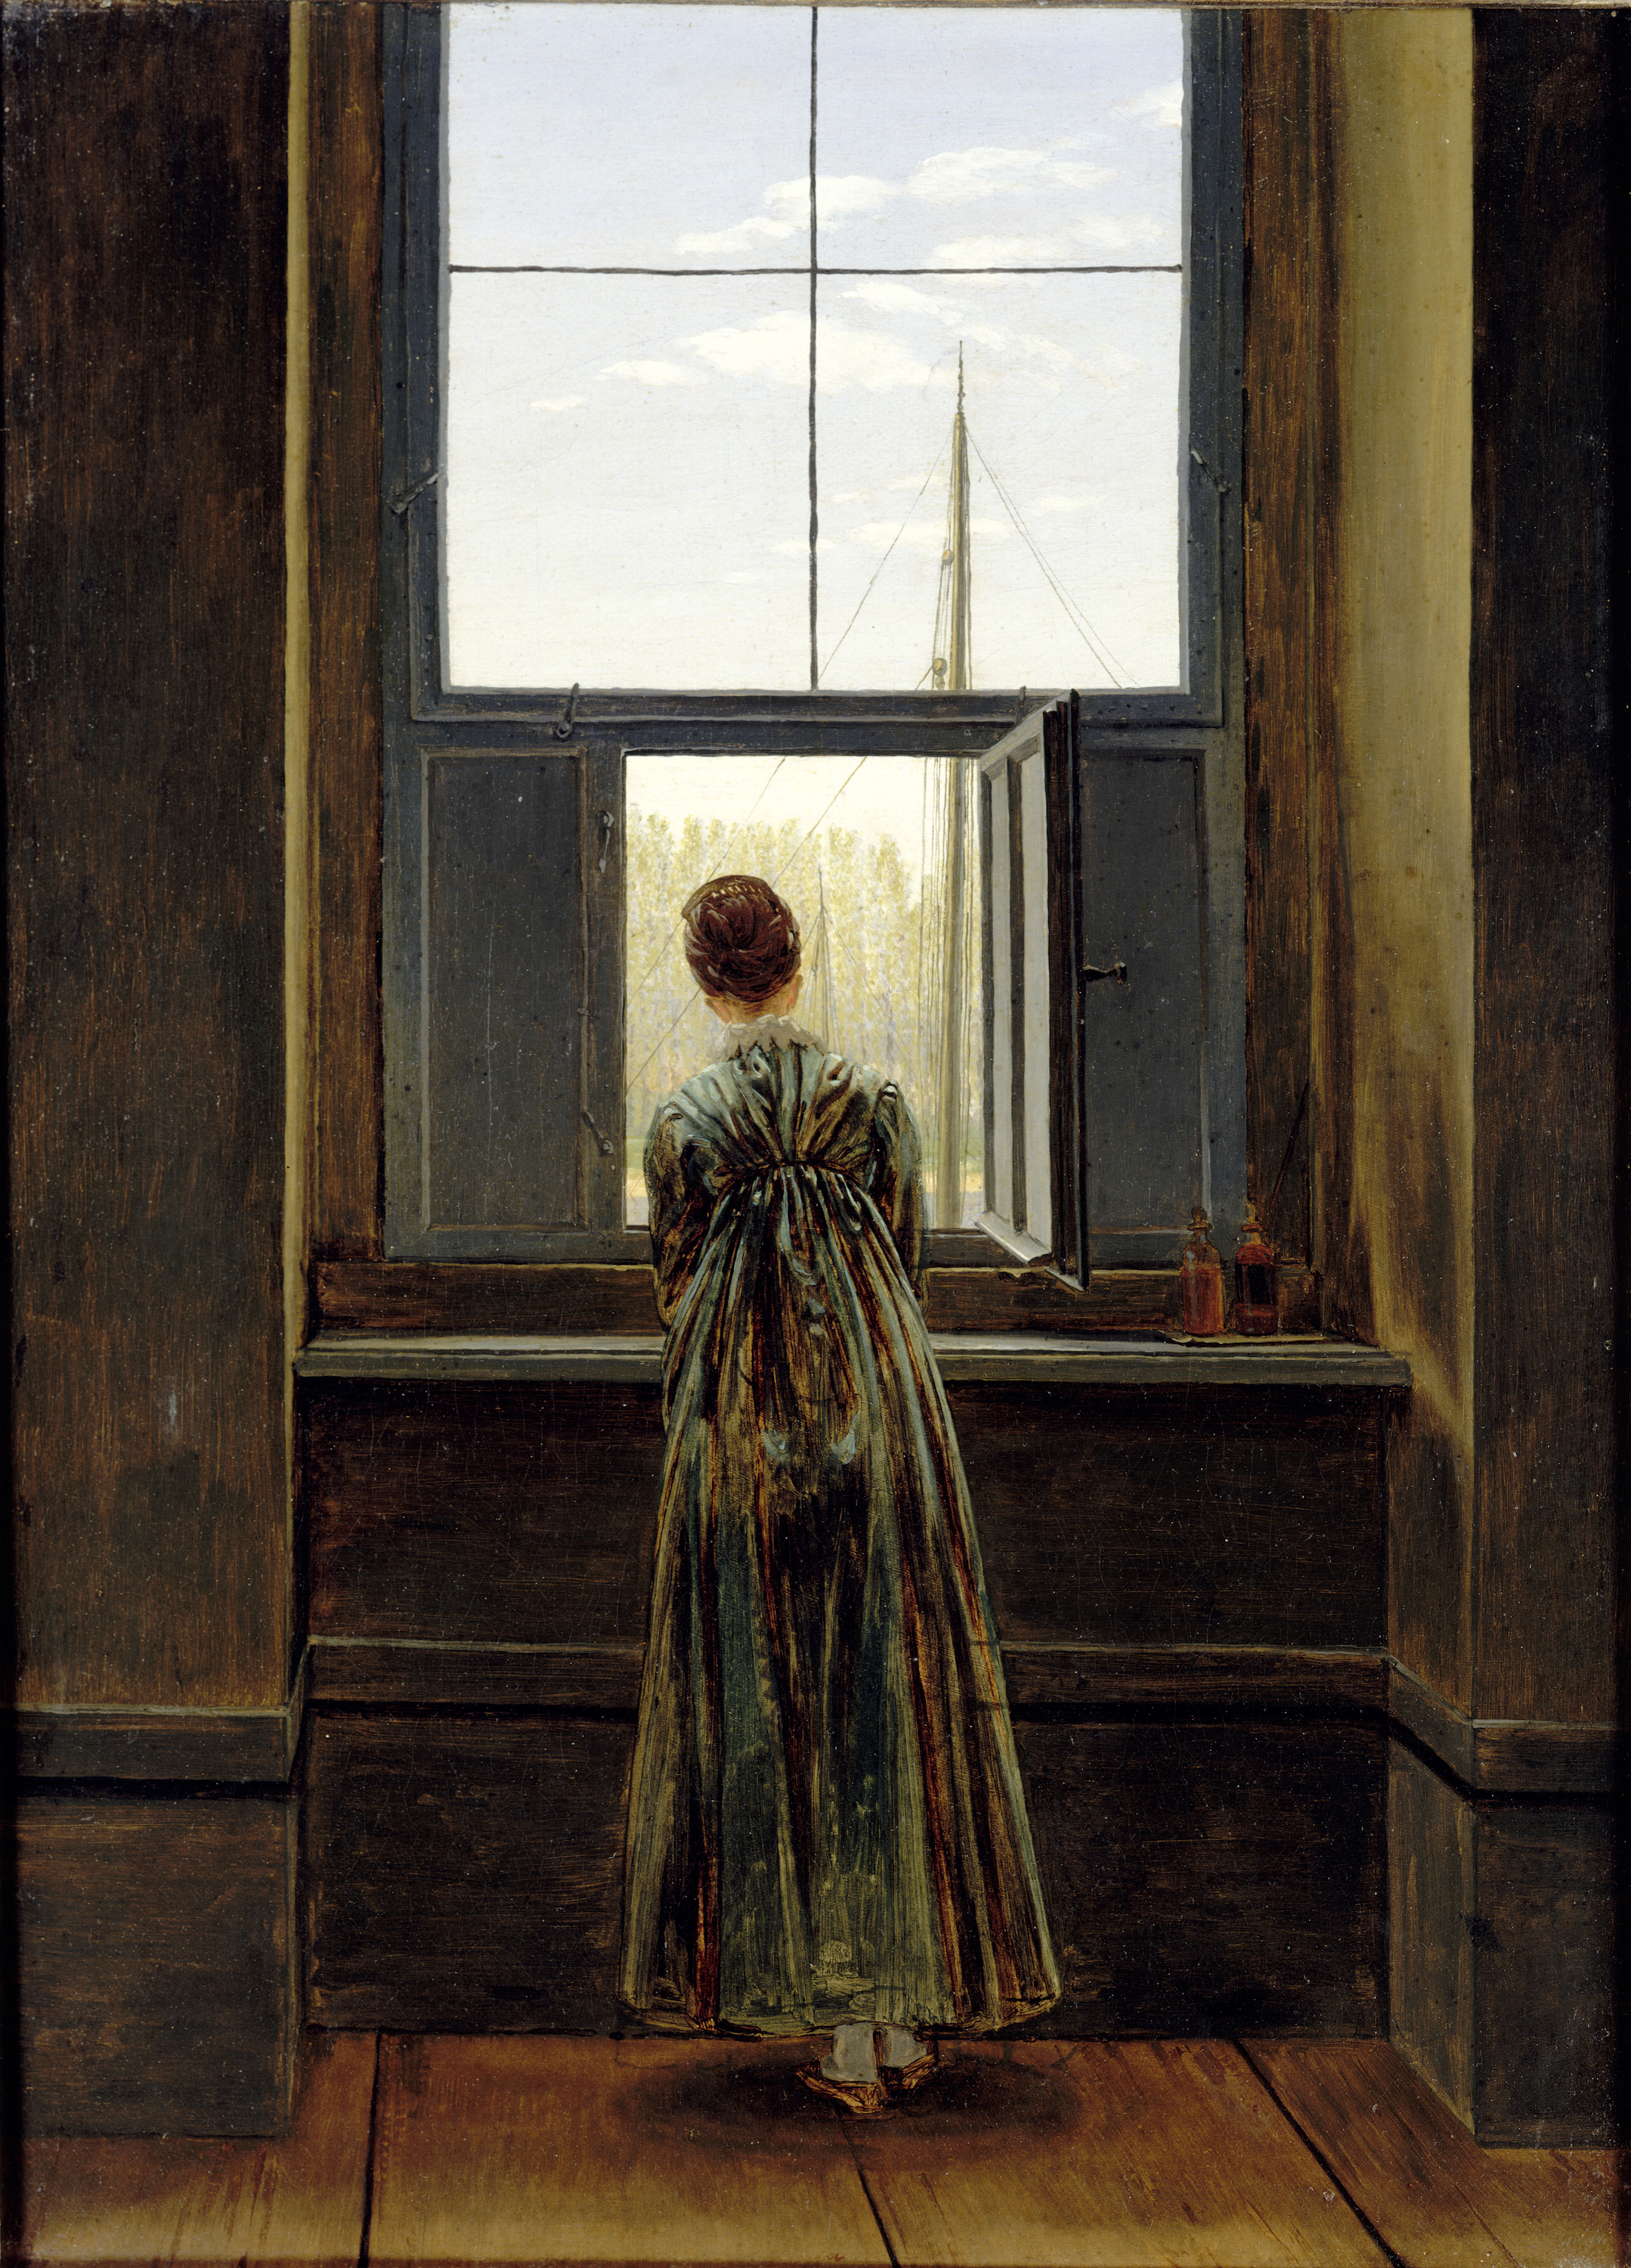 窗前的女人 by Caspar David Friedrich - 1822 - 73 x 44.1 cm 